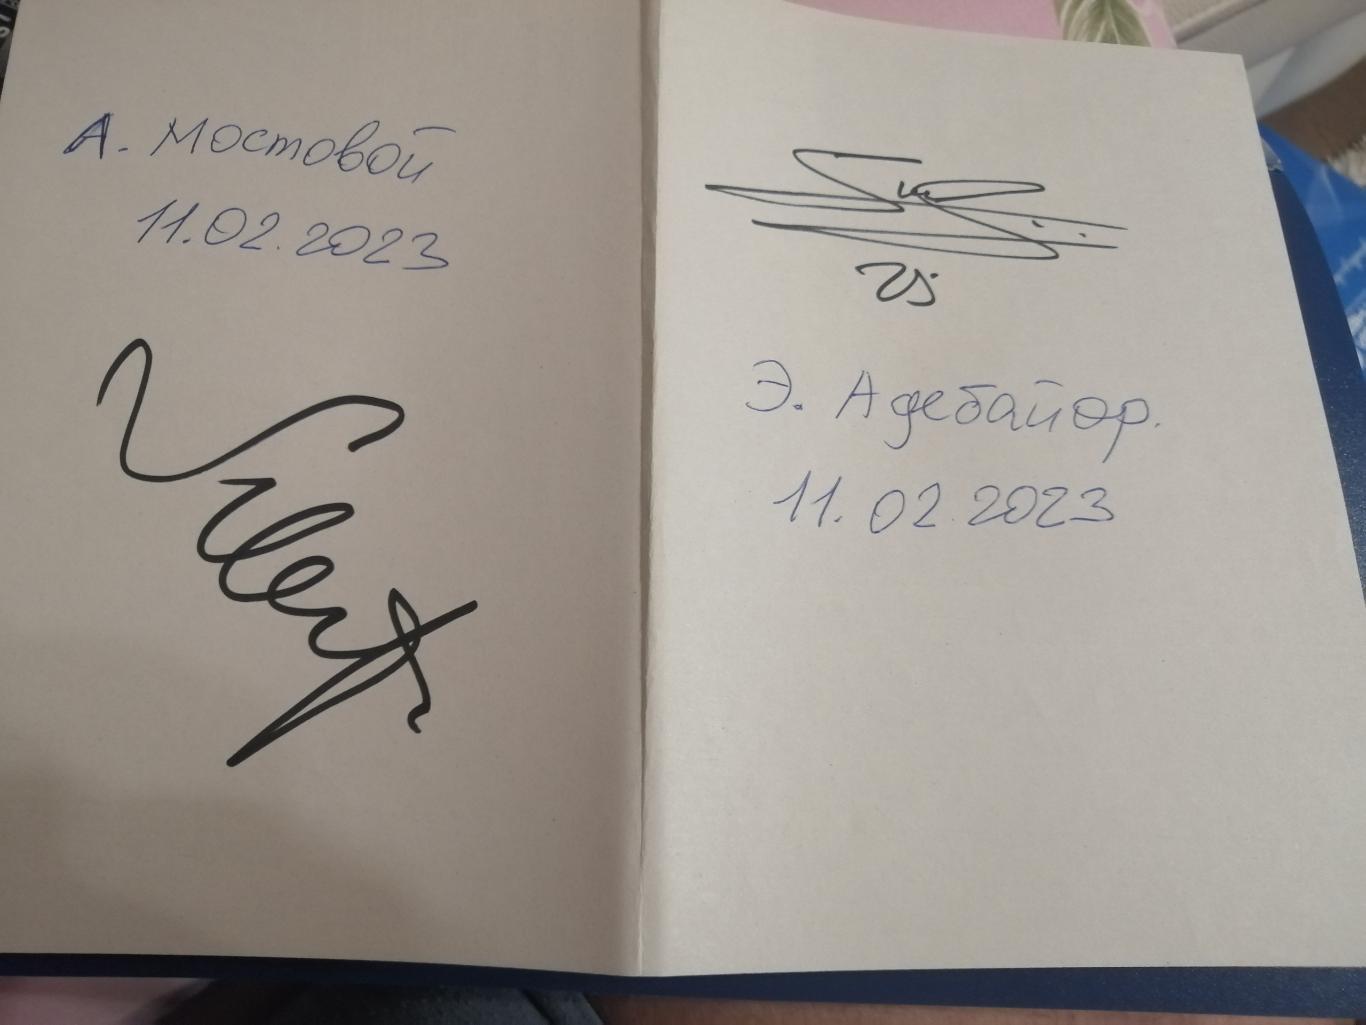 Автограф Эммануэля Адебайора и Александра Мостового